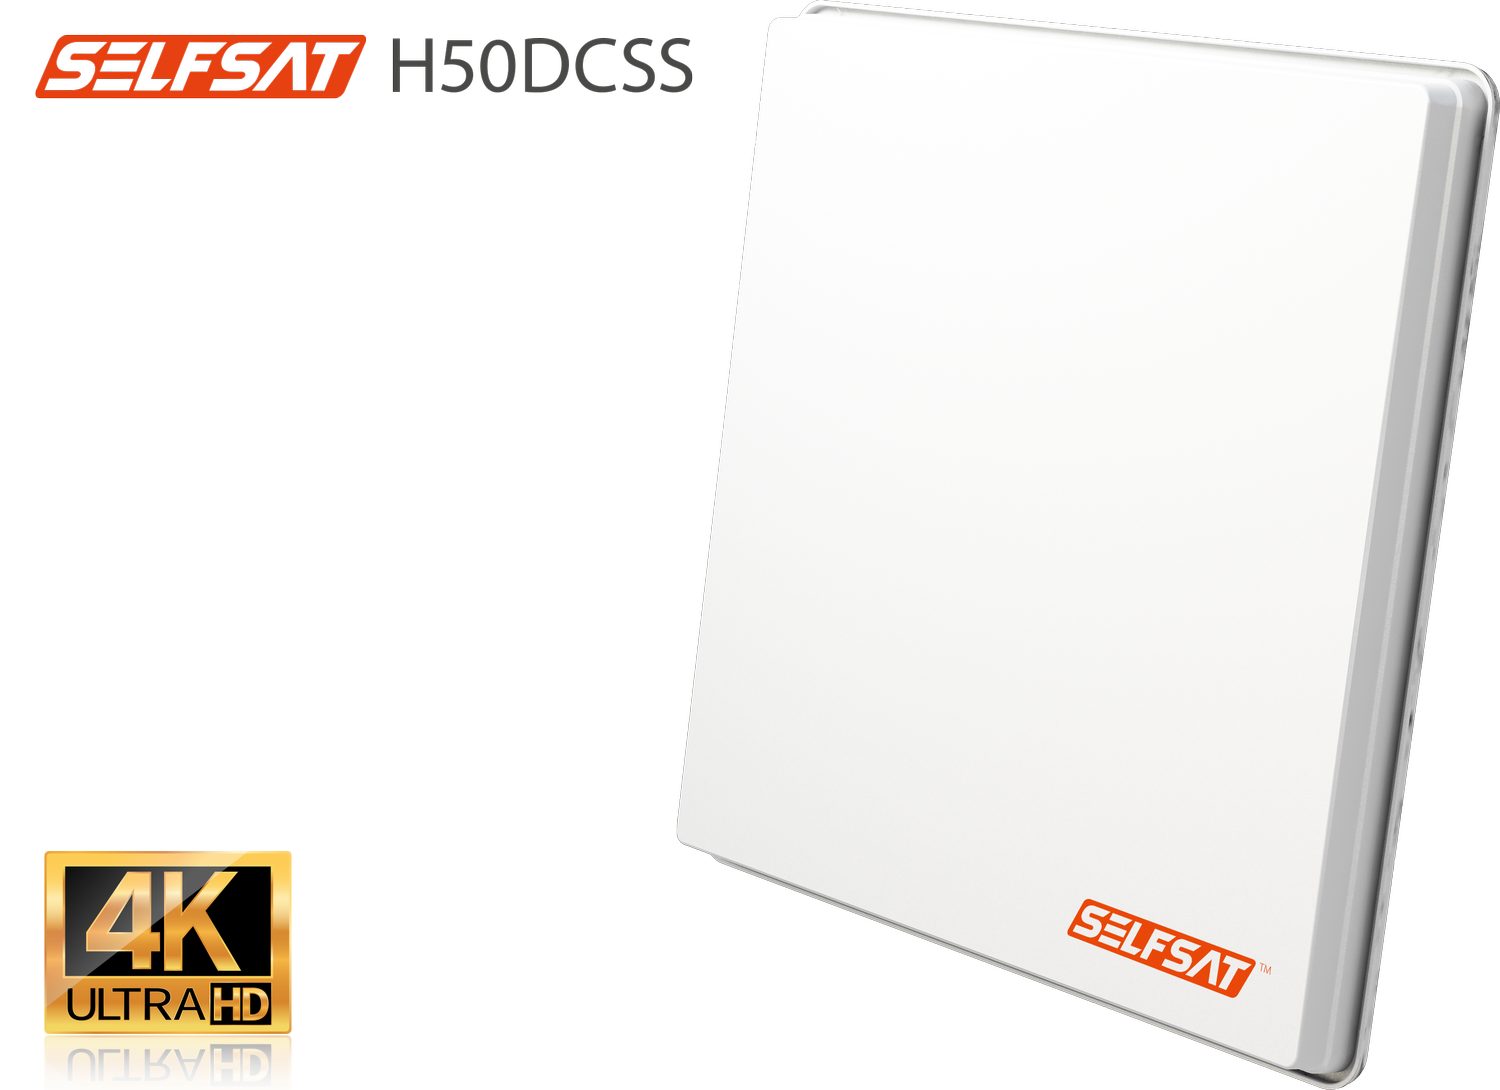 Selfsat H50dCSS Unicable 2 Antenne UHD 4K incl. 2 Legacy Ausgängen